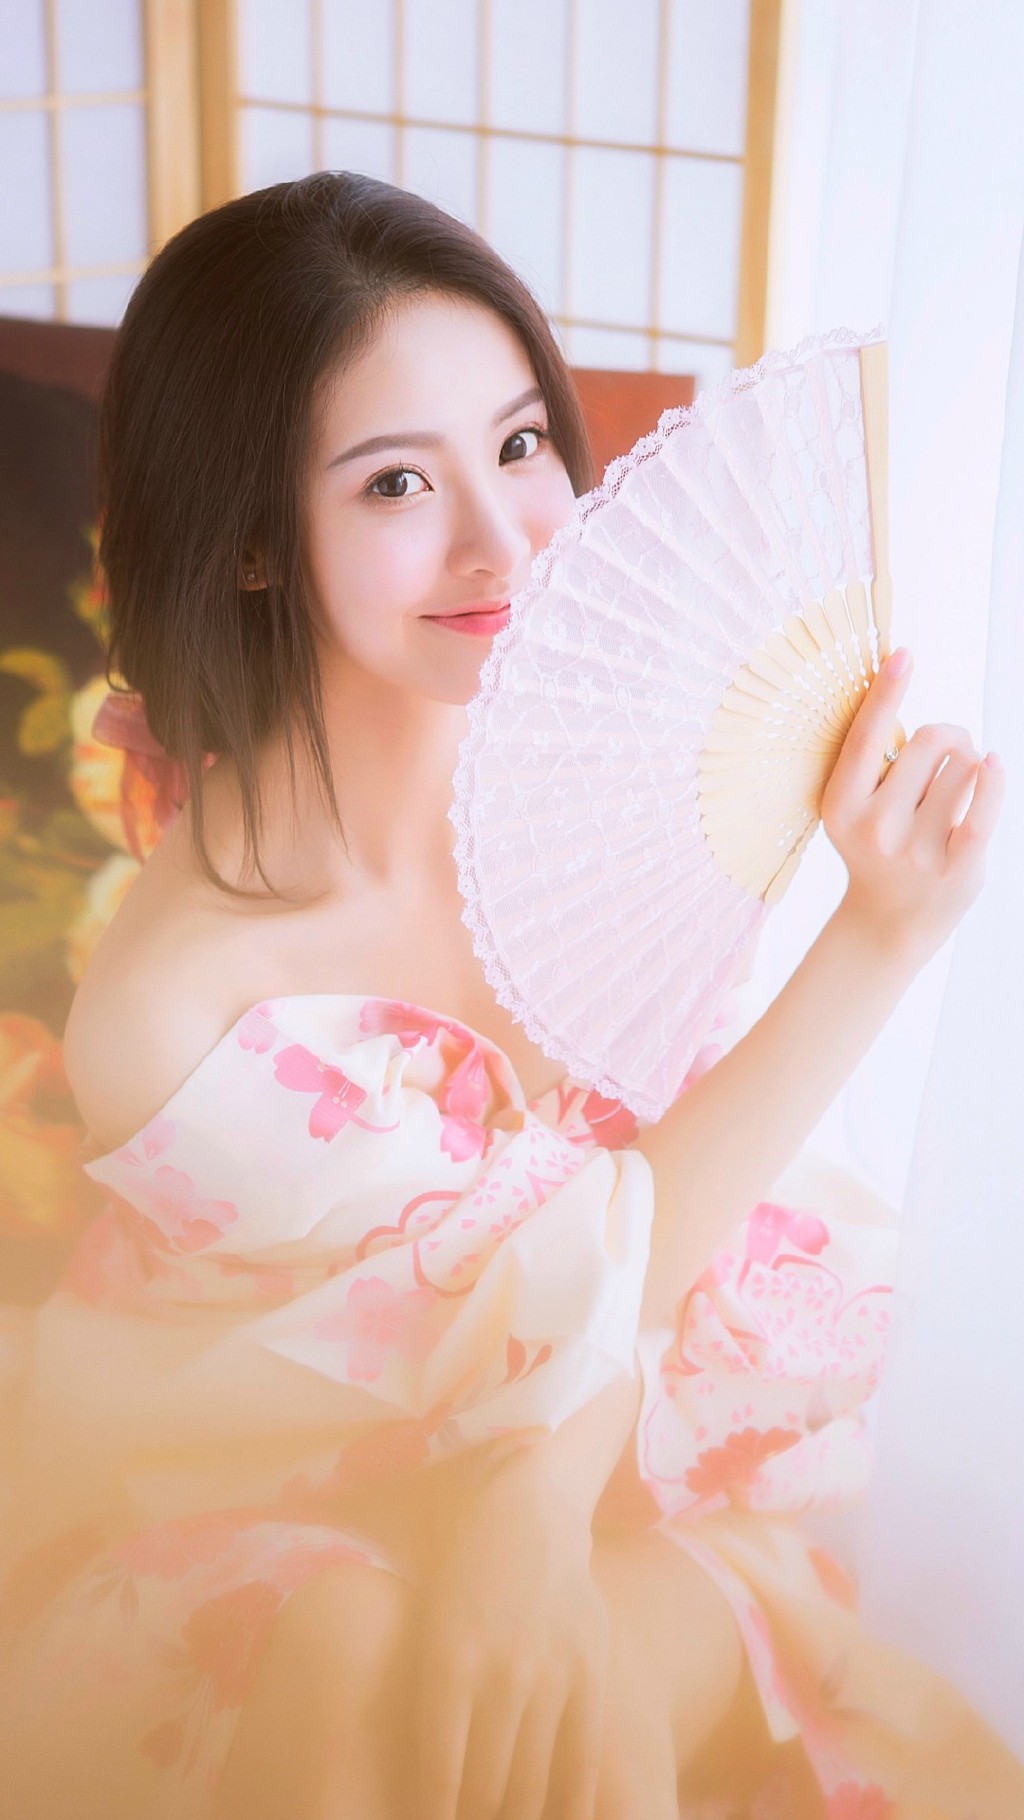 日本和服清纯美女玩性感秀美背